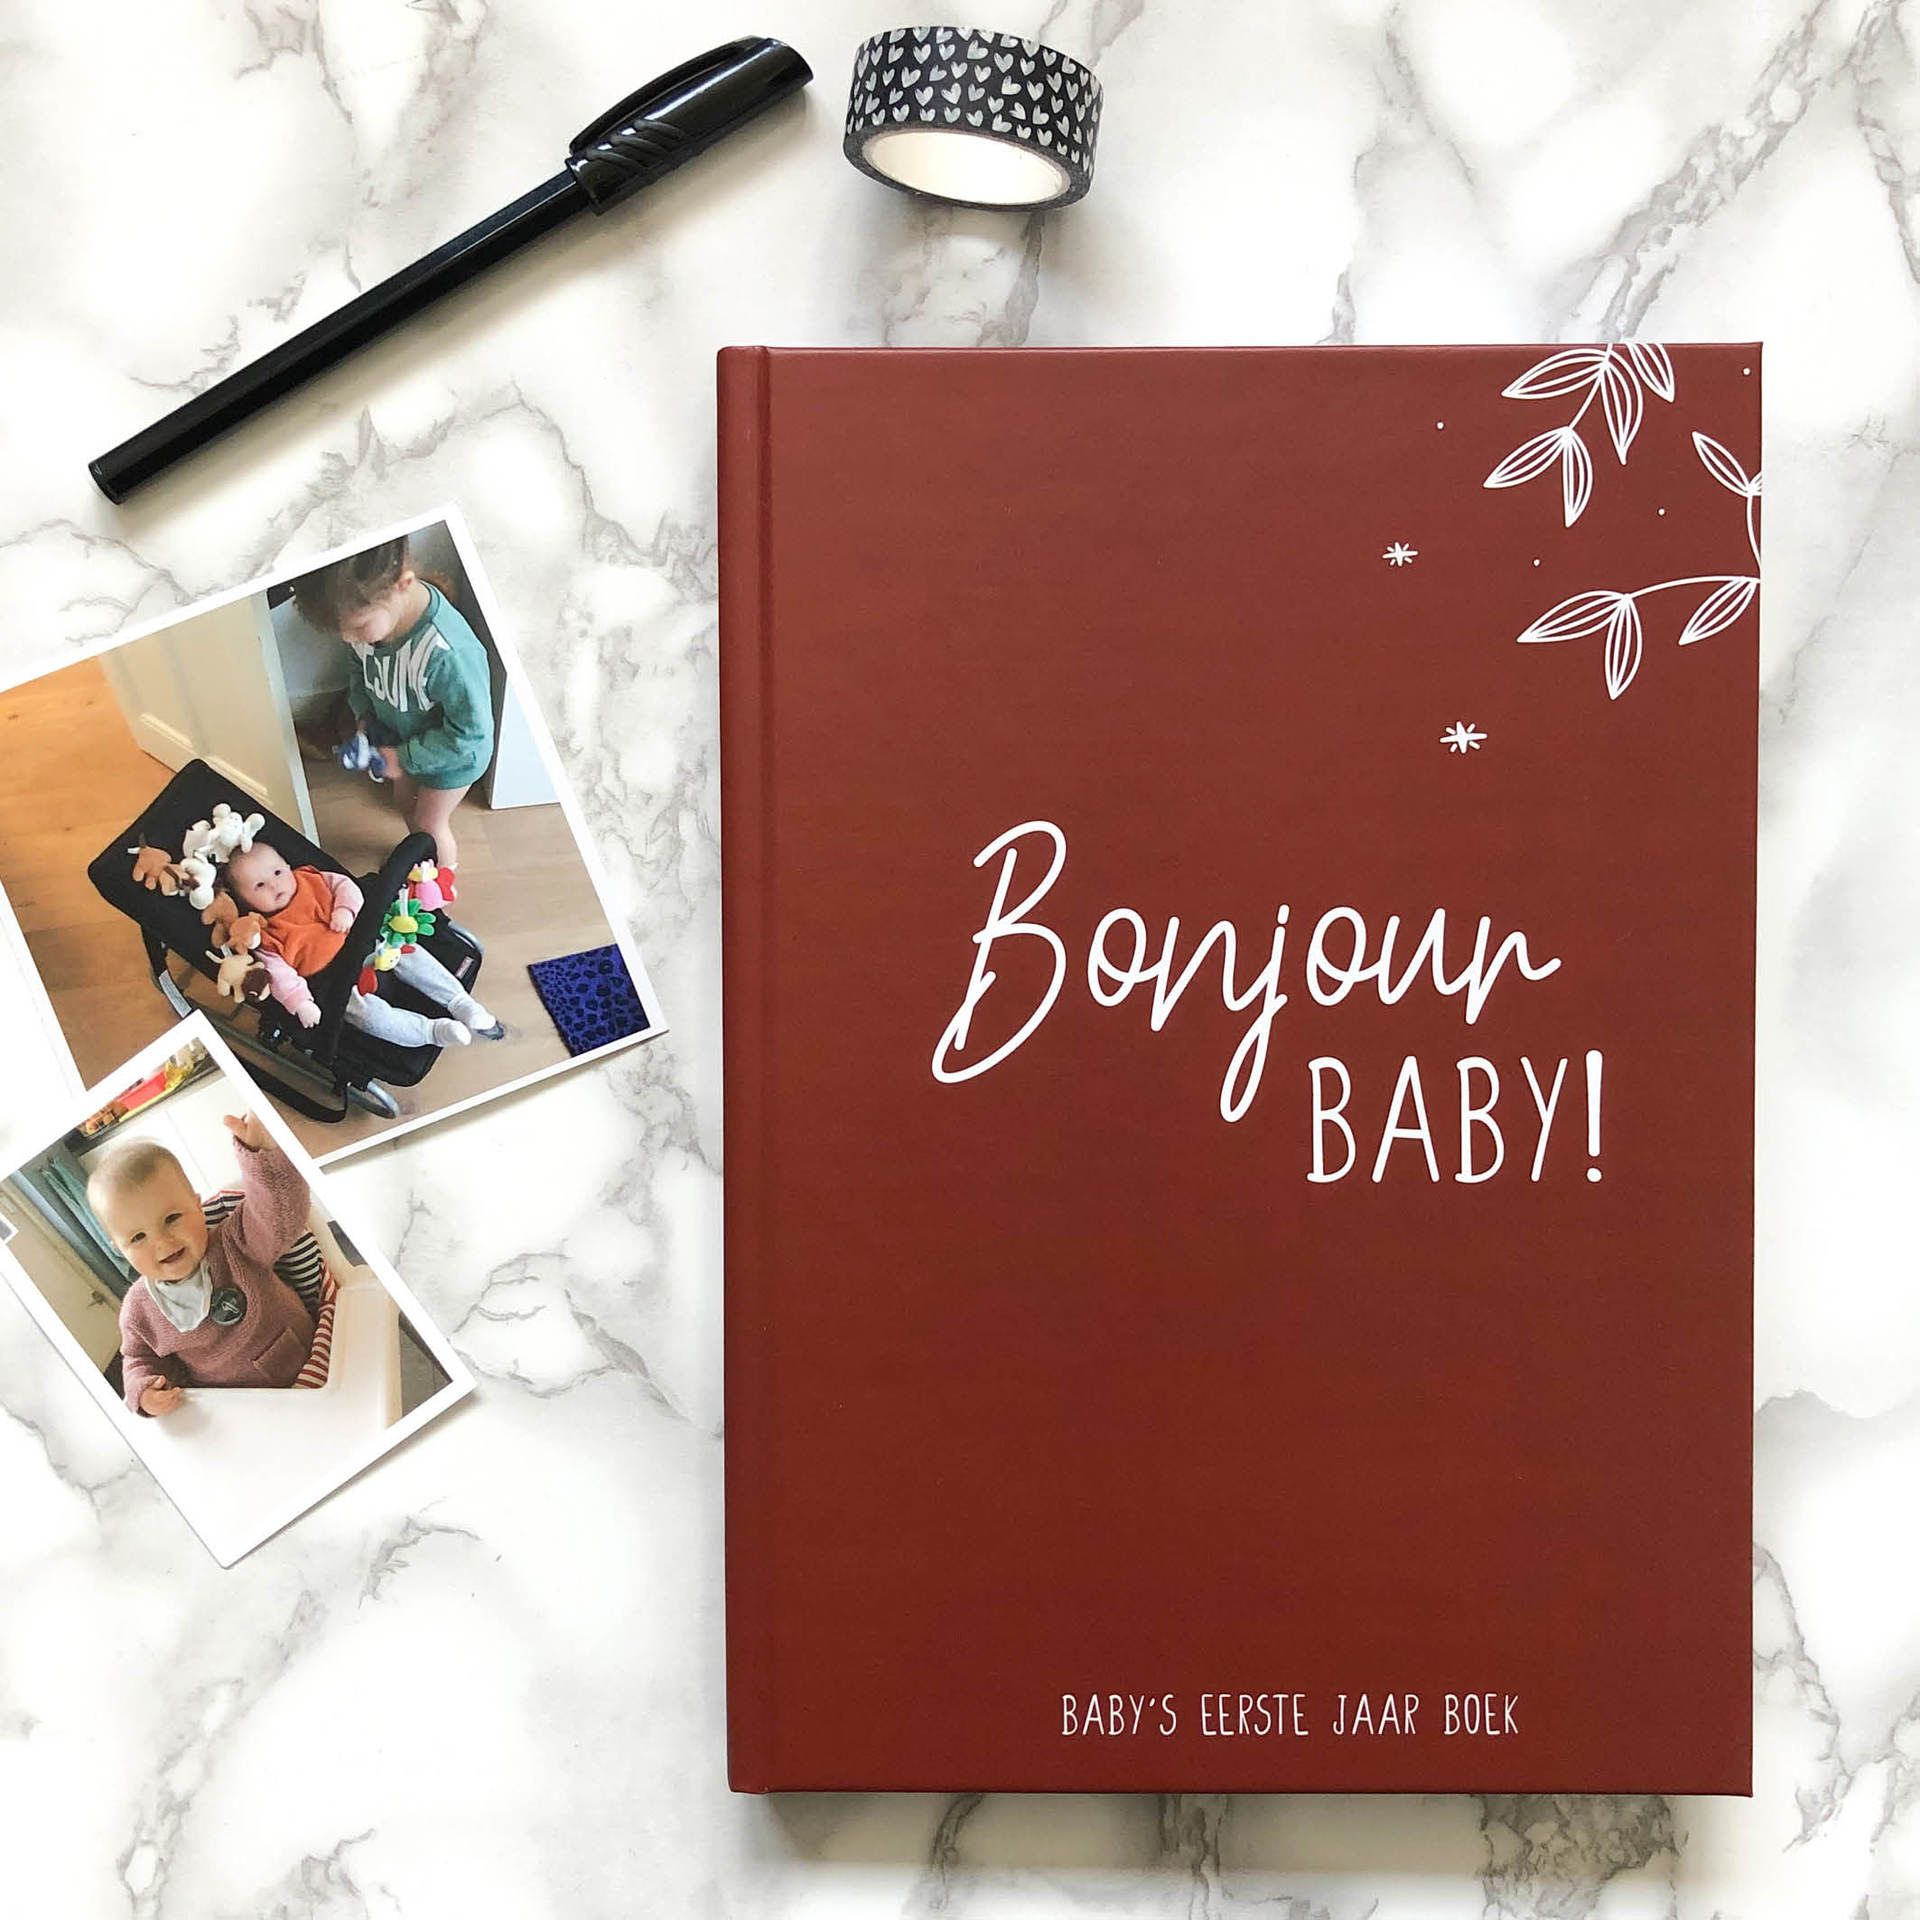 bonjour to you - baby's eerste jaar boek rusty red